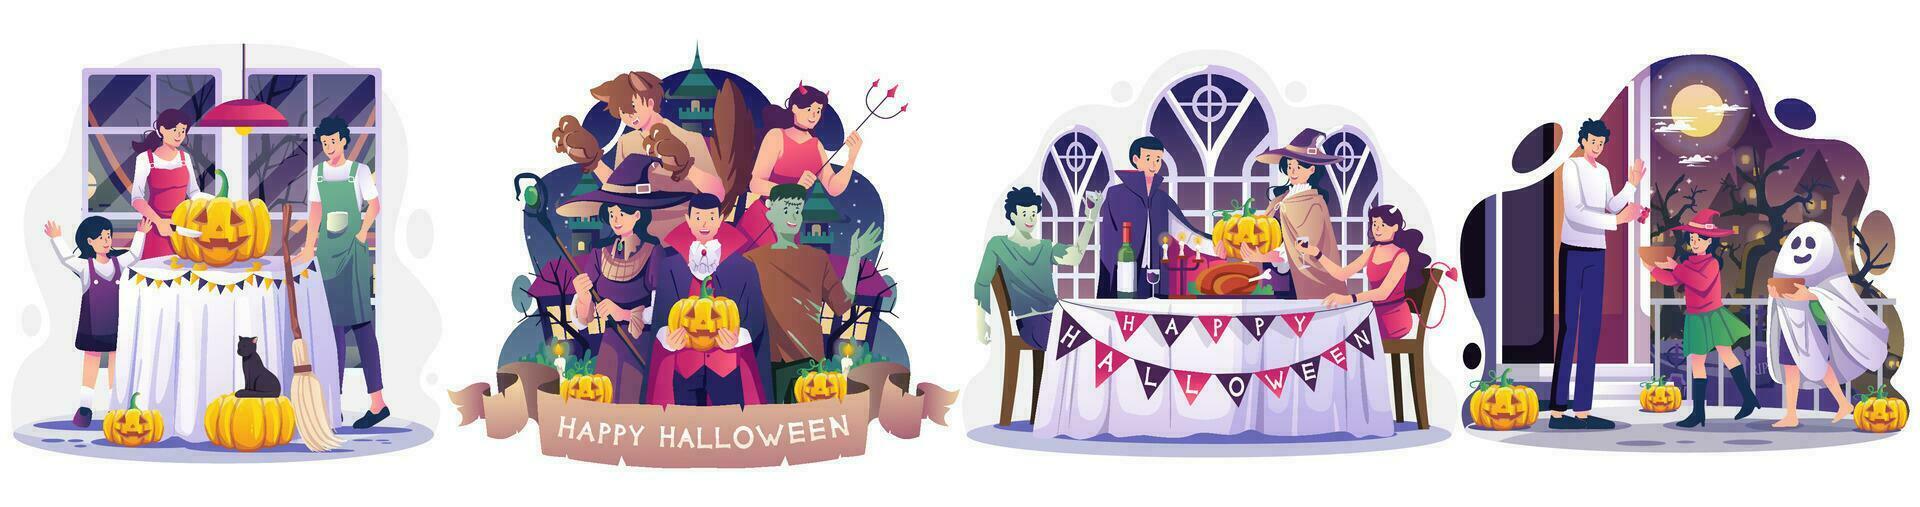 reeks van halloween concept illustratie met mensen in kostuums vieren halloween illustratie vector